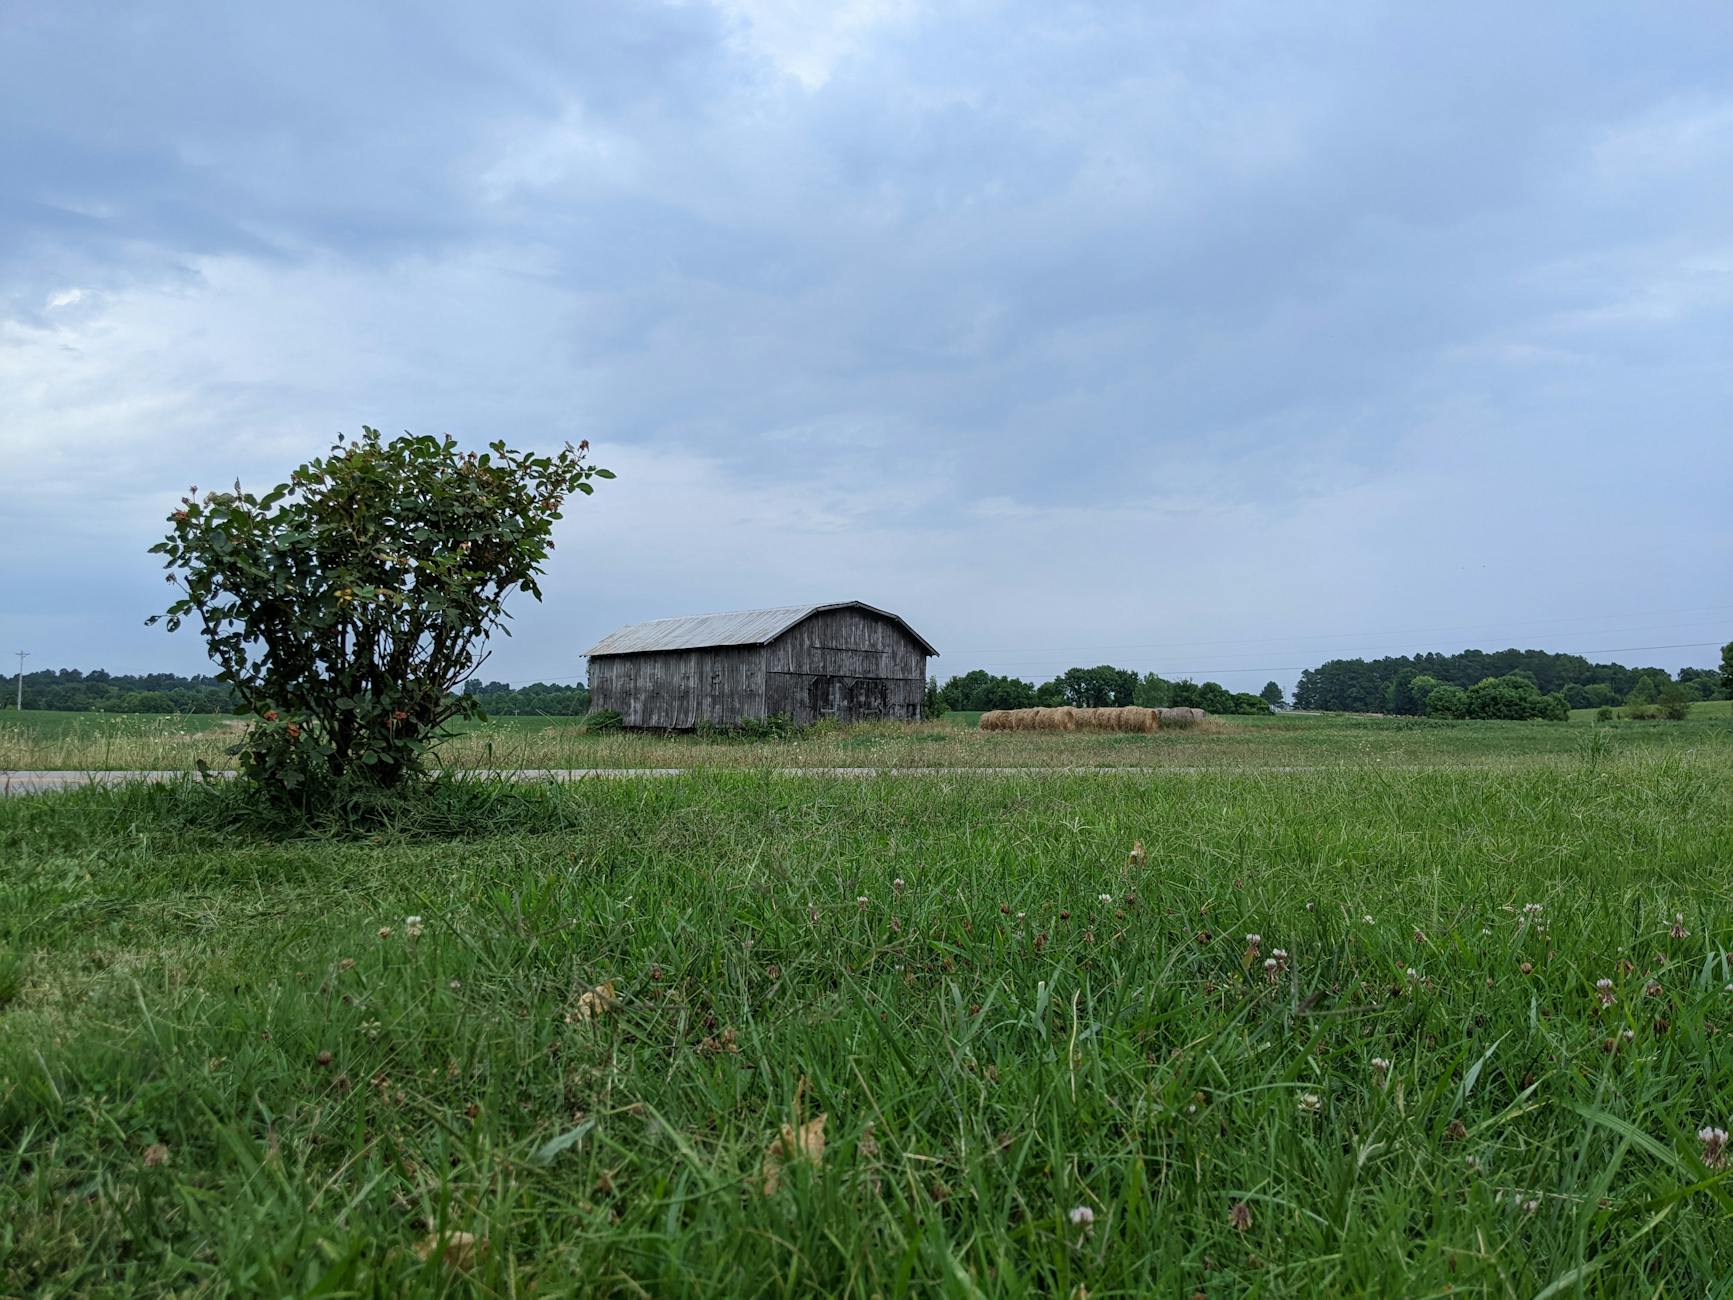 a barn on a grassy field